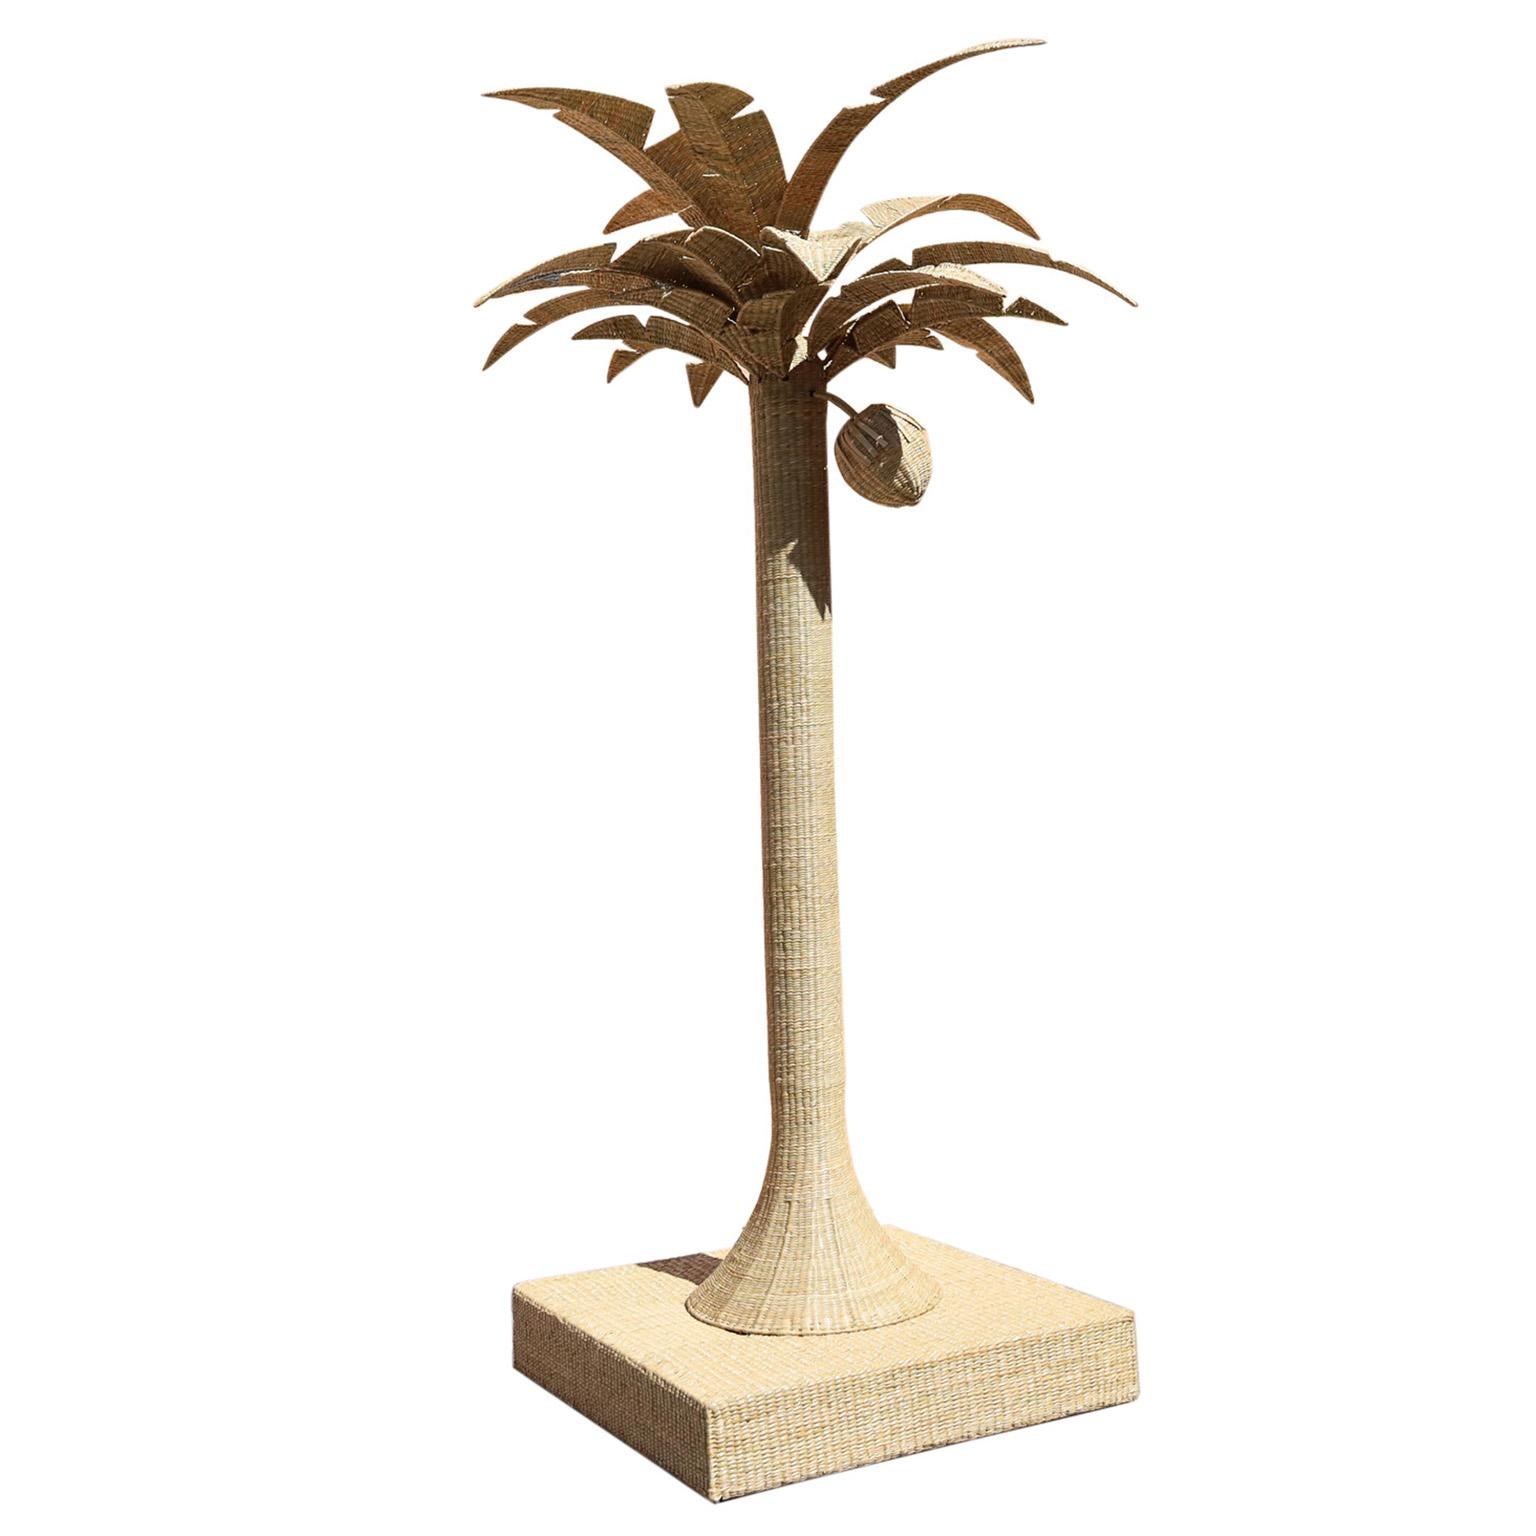 Lebensgroße Skulptur einer Palme mit einer Kokosnuss aus Weiden- oder Schilfrohr, umhüllt von einem Metallrahmen mit beeindruckender stilisierter Präsenz. Aus der FS Flores Collection'S, die exklusiv von F.S. entworfen und angeboten wird. Henemader